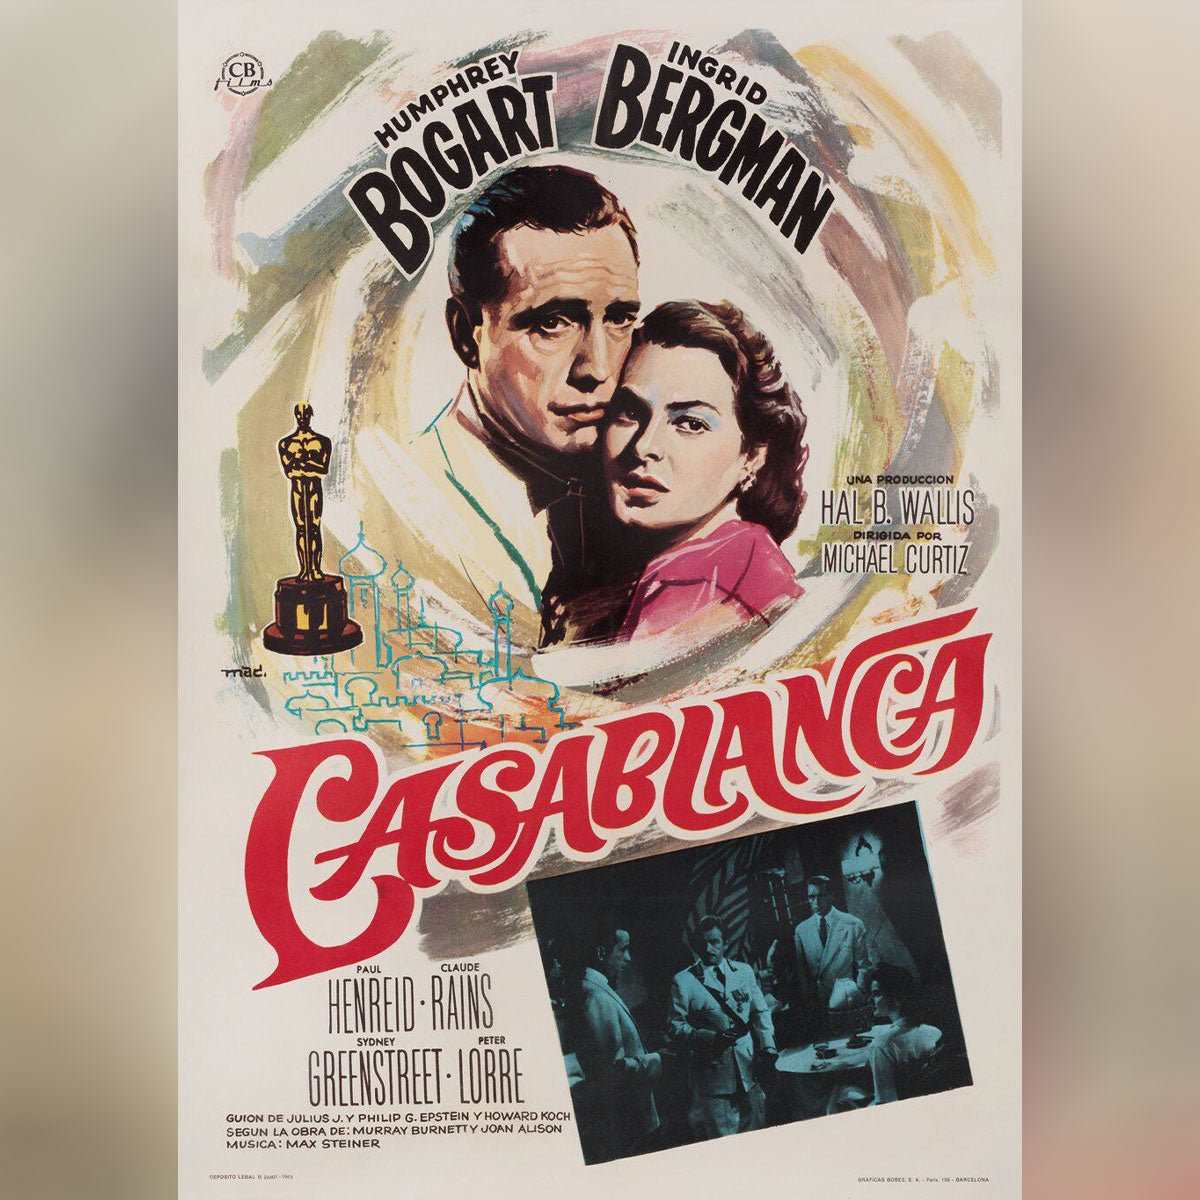 Casablanca (1965R)